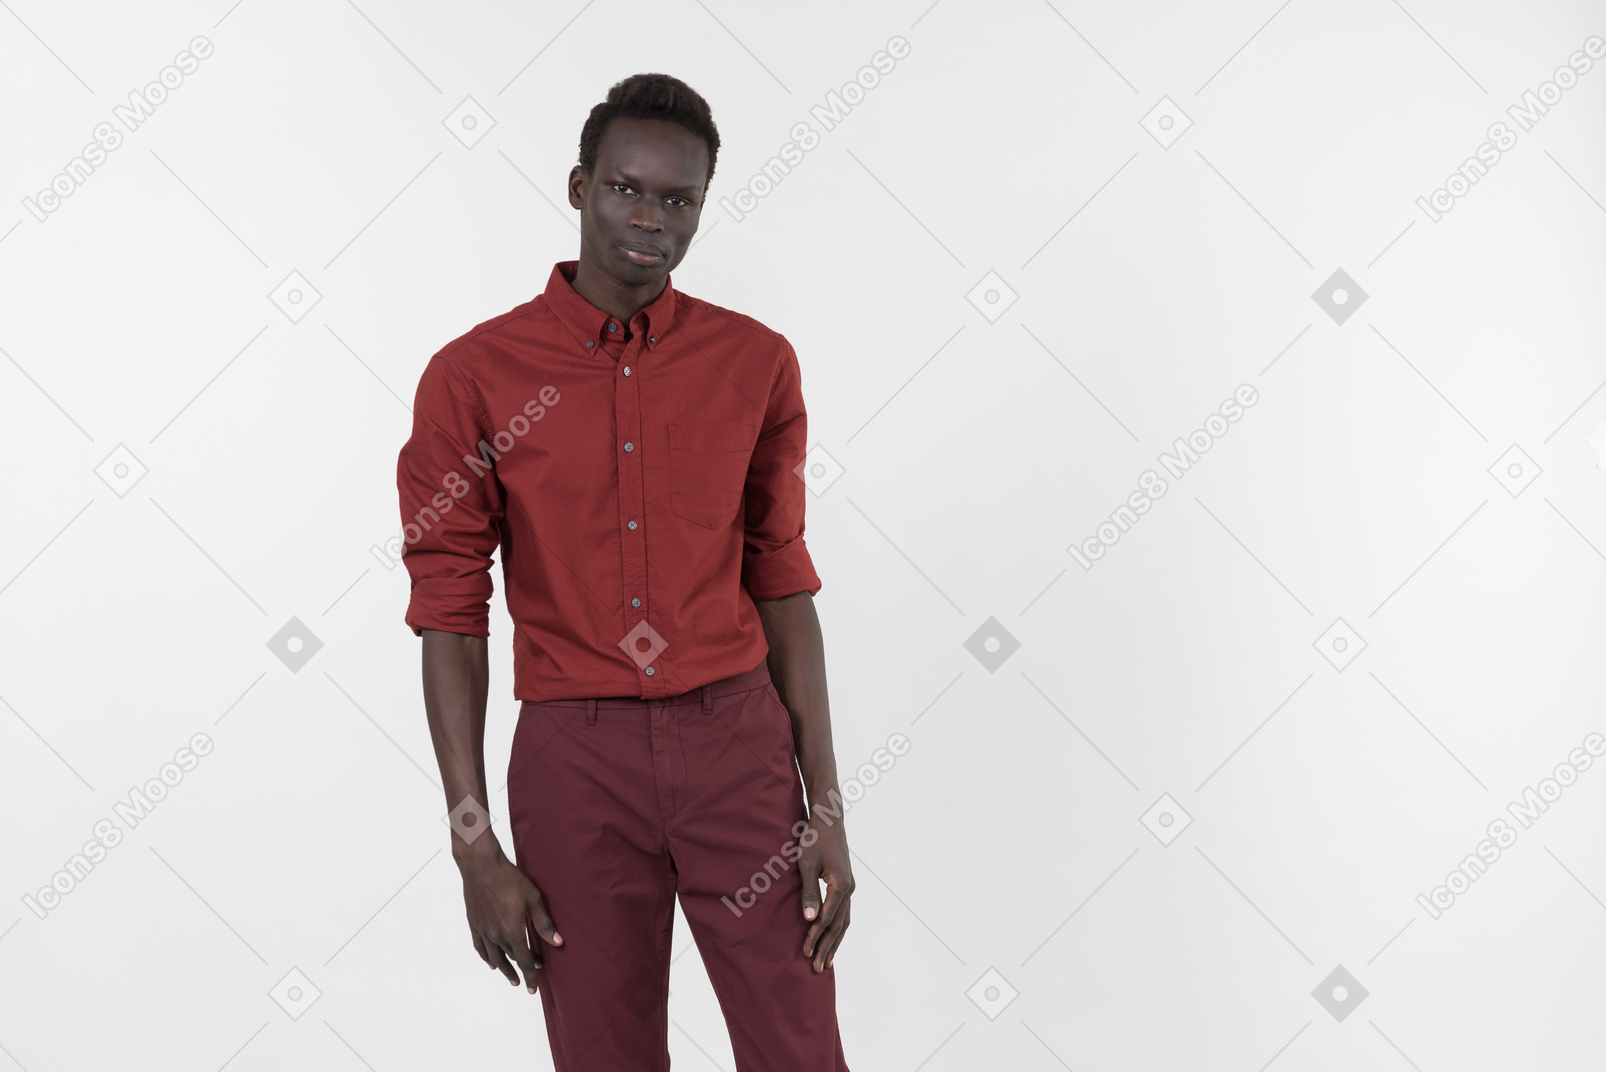 重ね合わせた袖と白い背景の上に一人で立って濃い赤のズボンと赤いシャツの若い黒人男性